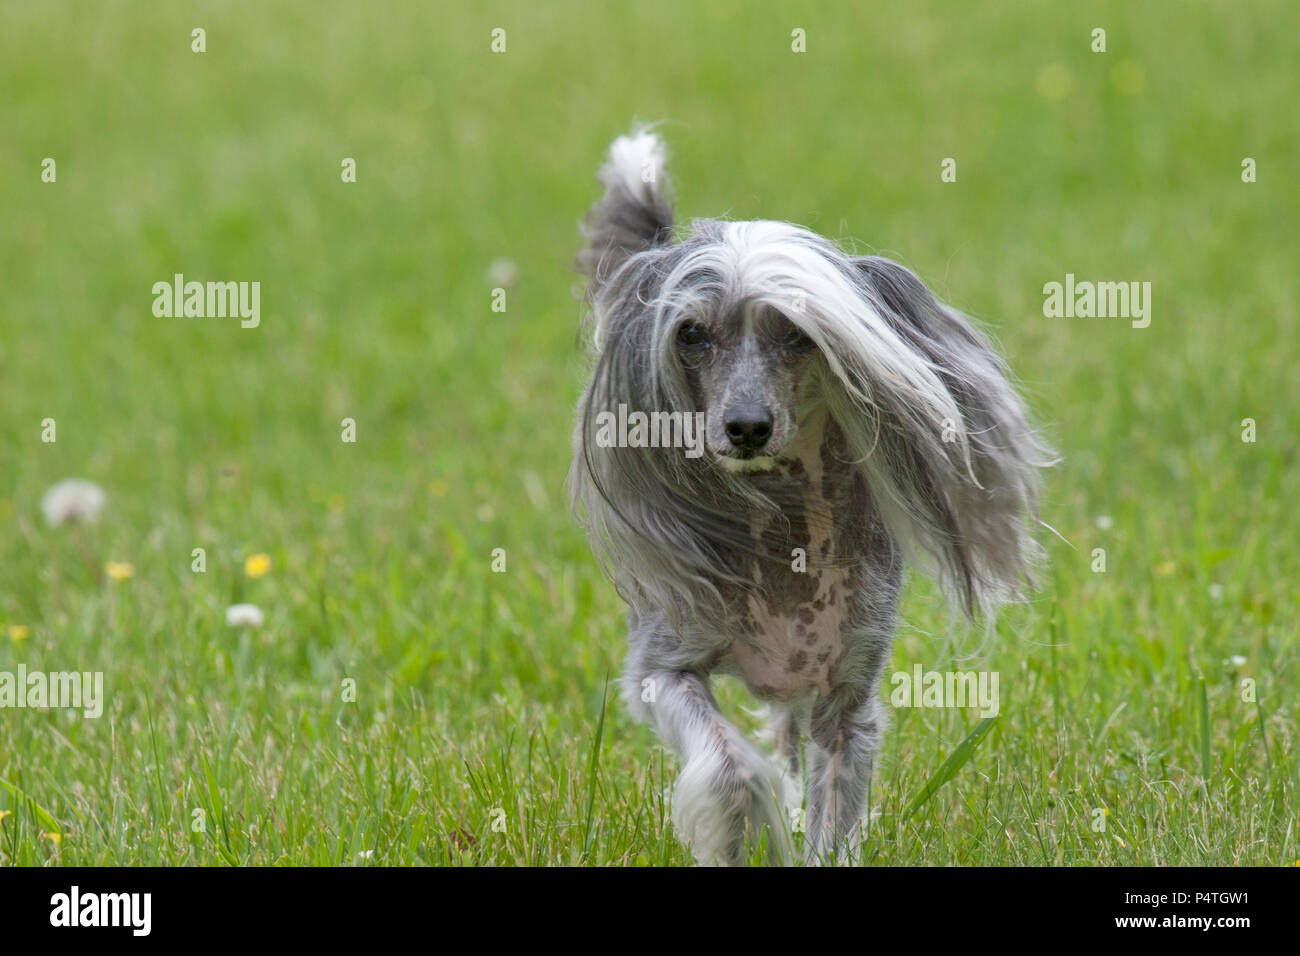 Chinese crested dog Stock Photo